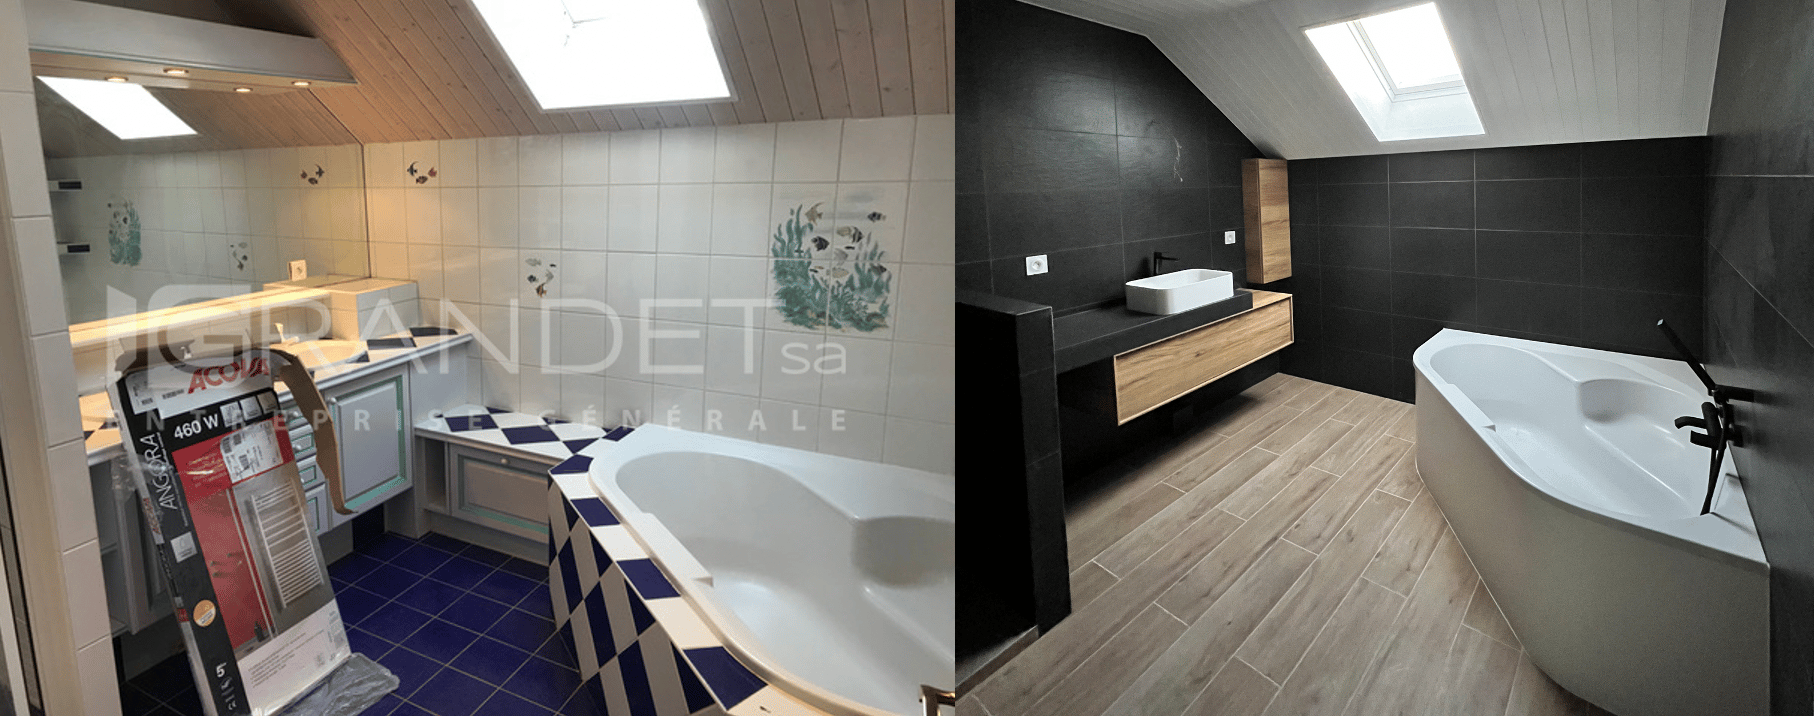 Rénovation complète maison Thônex : salle de bains principale